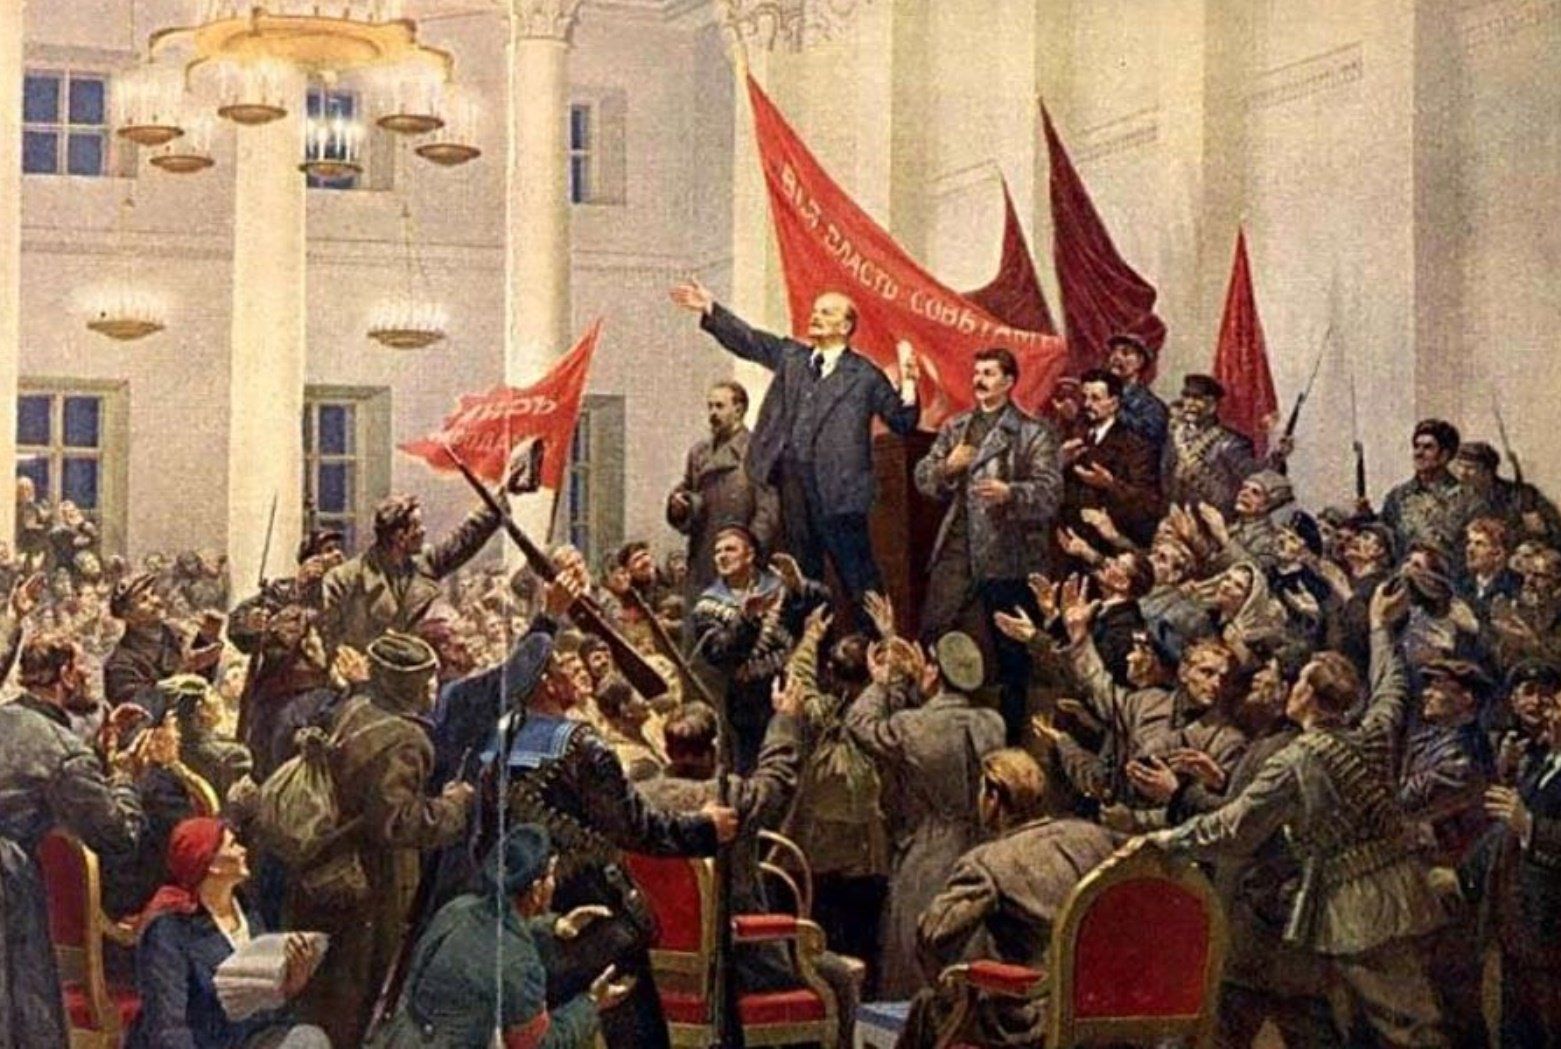 Cách mạng tháng mười Nga là một trong những cách mạng vĩ đại nhất trong lịch sử thế giới. Hình ảnh của cách mạng này sẽ giúp bạn hiểu rõ hơn về sự nghiệp cách mạng của nhân dân Nga và tầm quan trọng của nó đối với toàn thế giới. Hãy cùng xem những bức ảnh đầy cảm hứng về cách mạng tháng mười Nga.